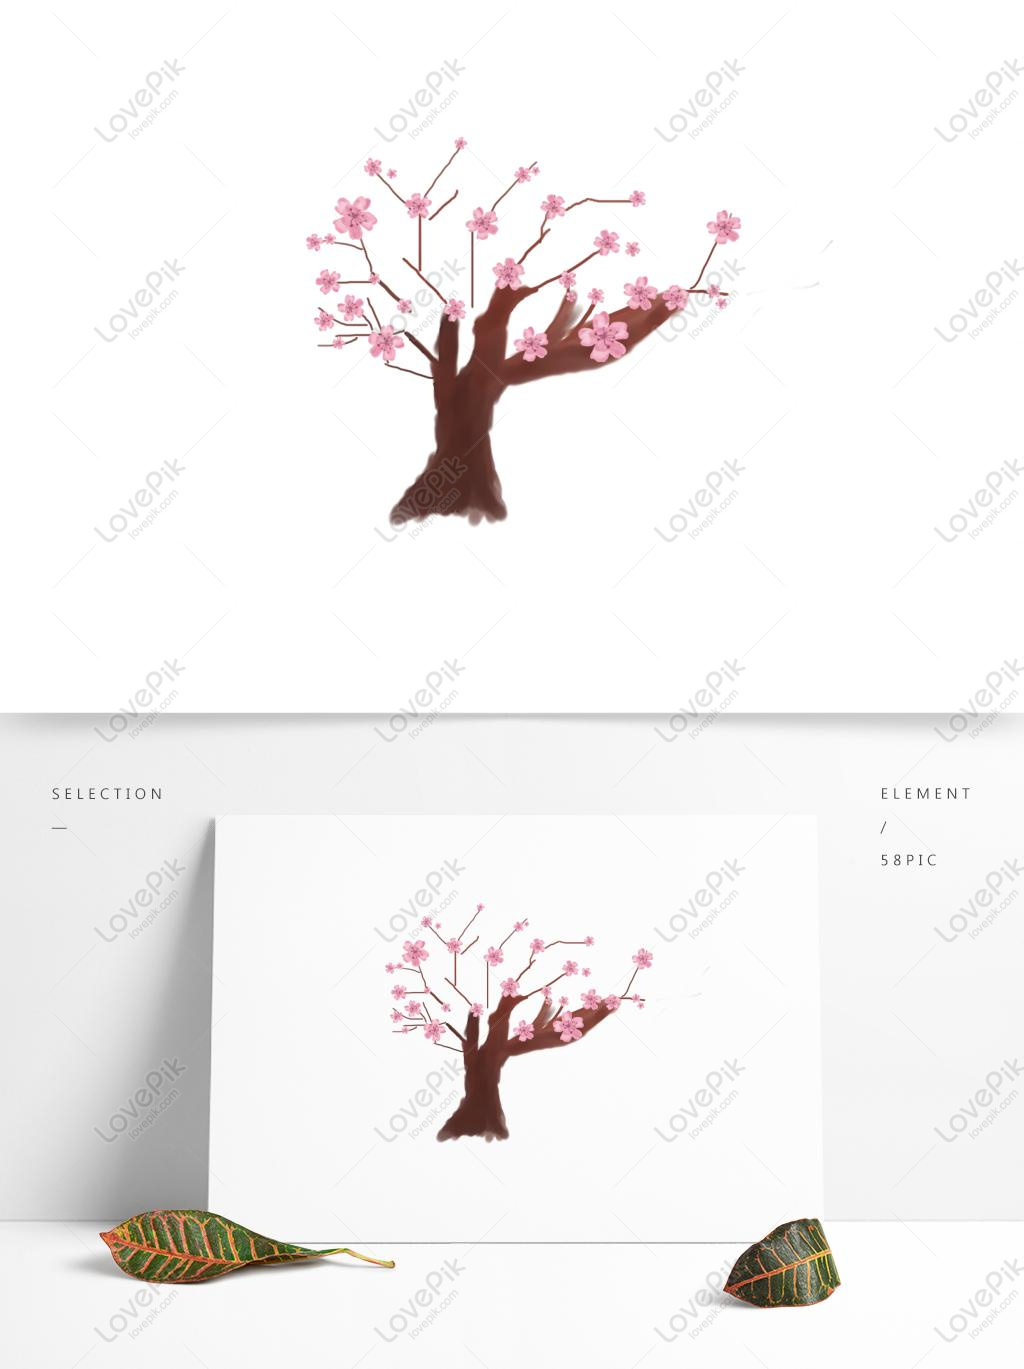 桃の木の画像 桃の木の絵 背景イメージ Jp Lovepik Com検索画像